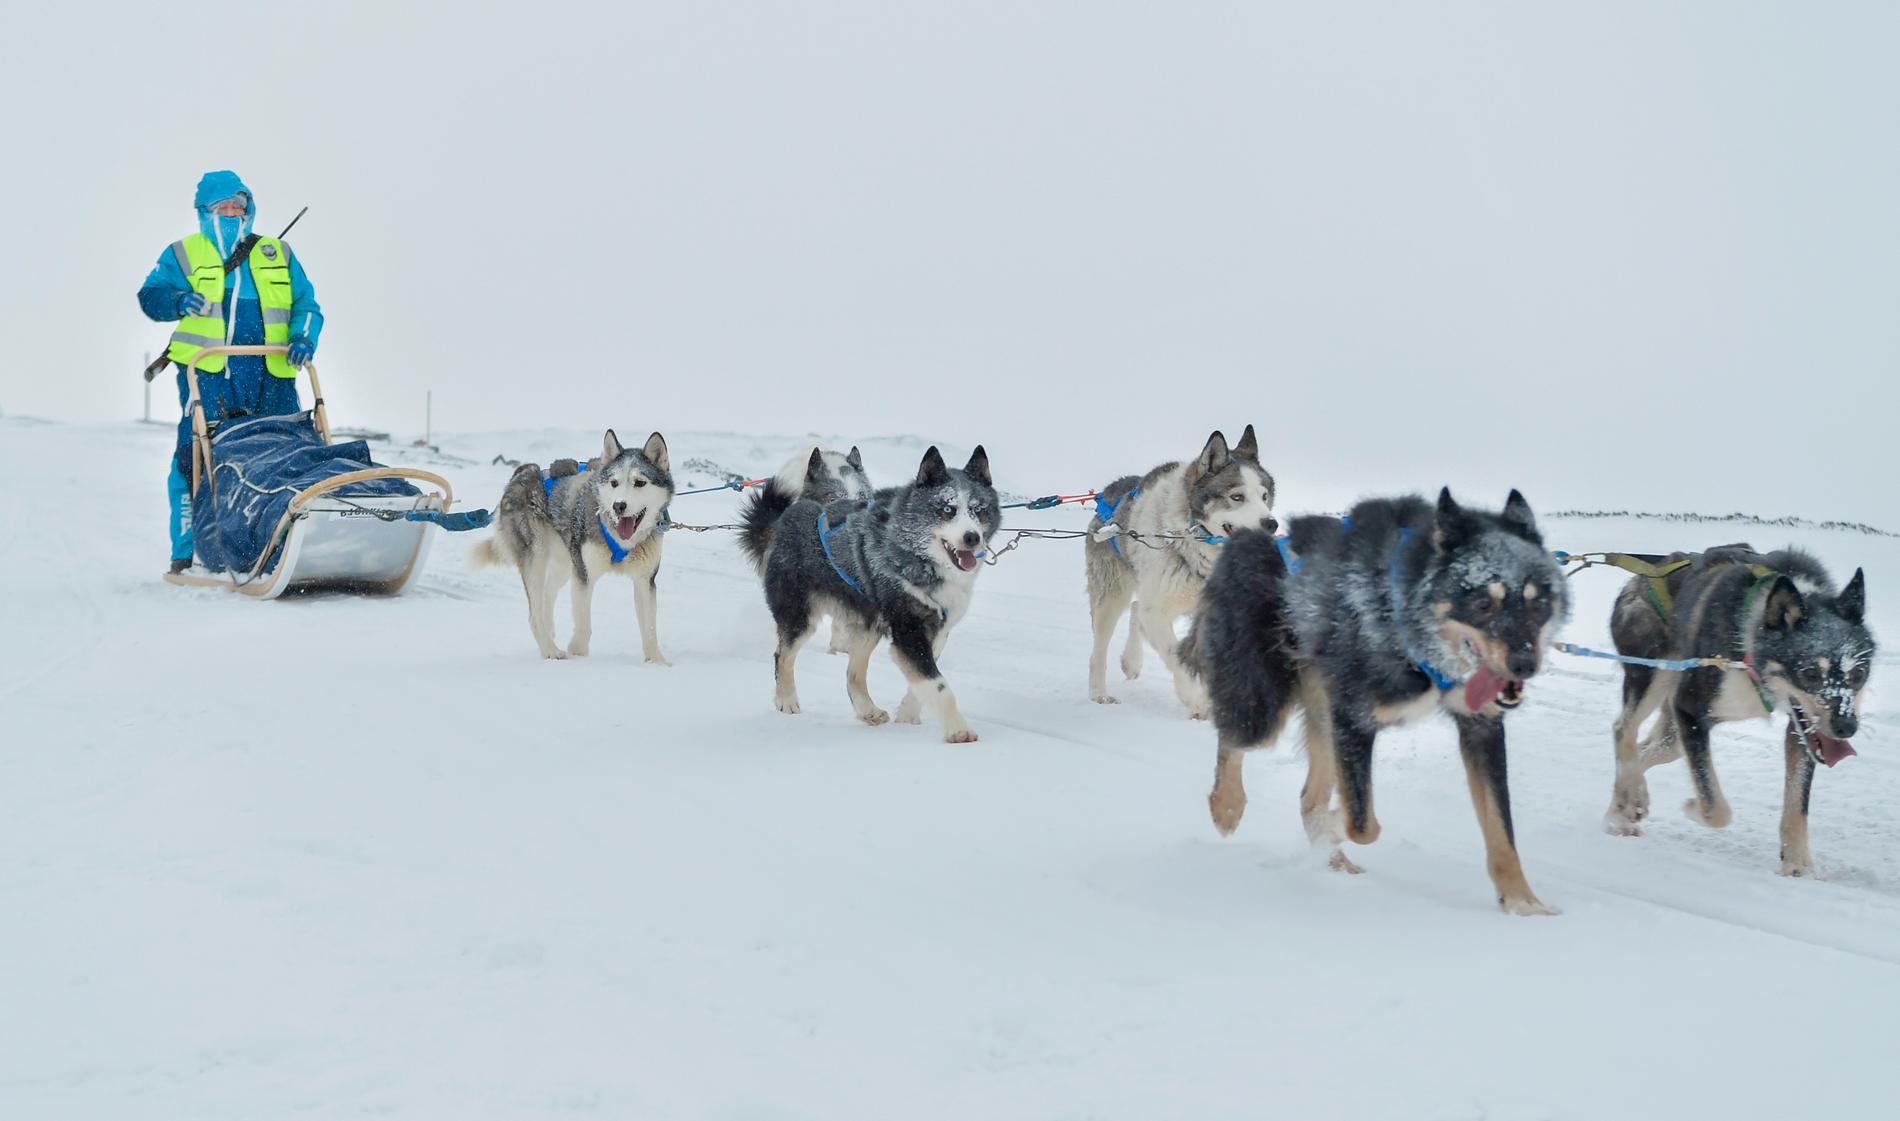 Hundspann är en populär aktivitet för de tusentals besökare som sätter kurs mot Svalbard. Men nu står slädhundarna i sina rastgårdar utan någonting att göra – och krisande turföretag kan tvingas att göra sig av med djuren på grund av höga fasta kostnader och noll inkomster. Bilden är tagen i Barentsburg, en rysk gruvort omkring sex mil från Longyearbyen. Båda platserna satsar allt mer på turism i takt med att koldriften minskar.